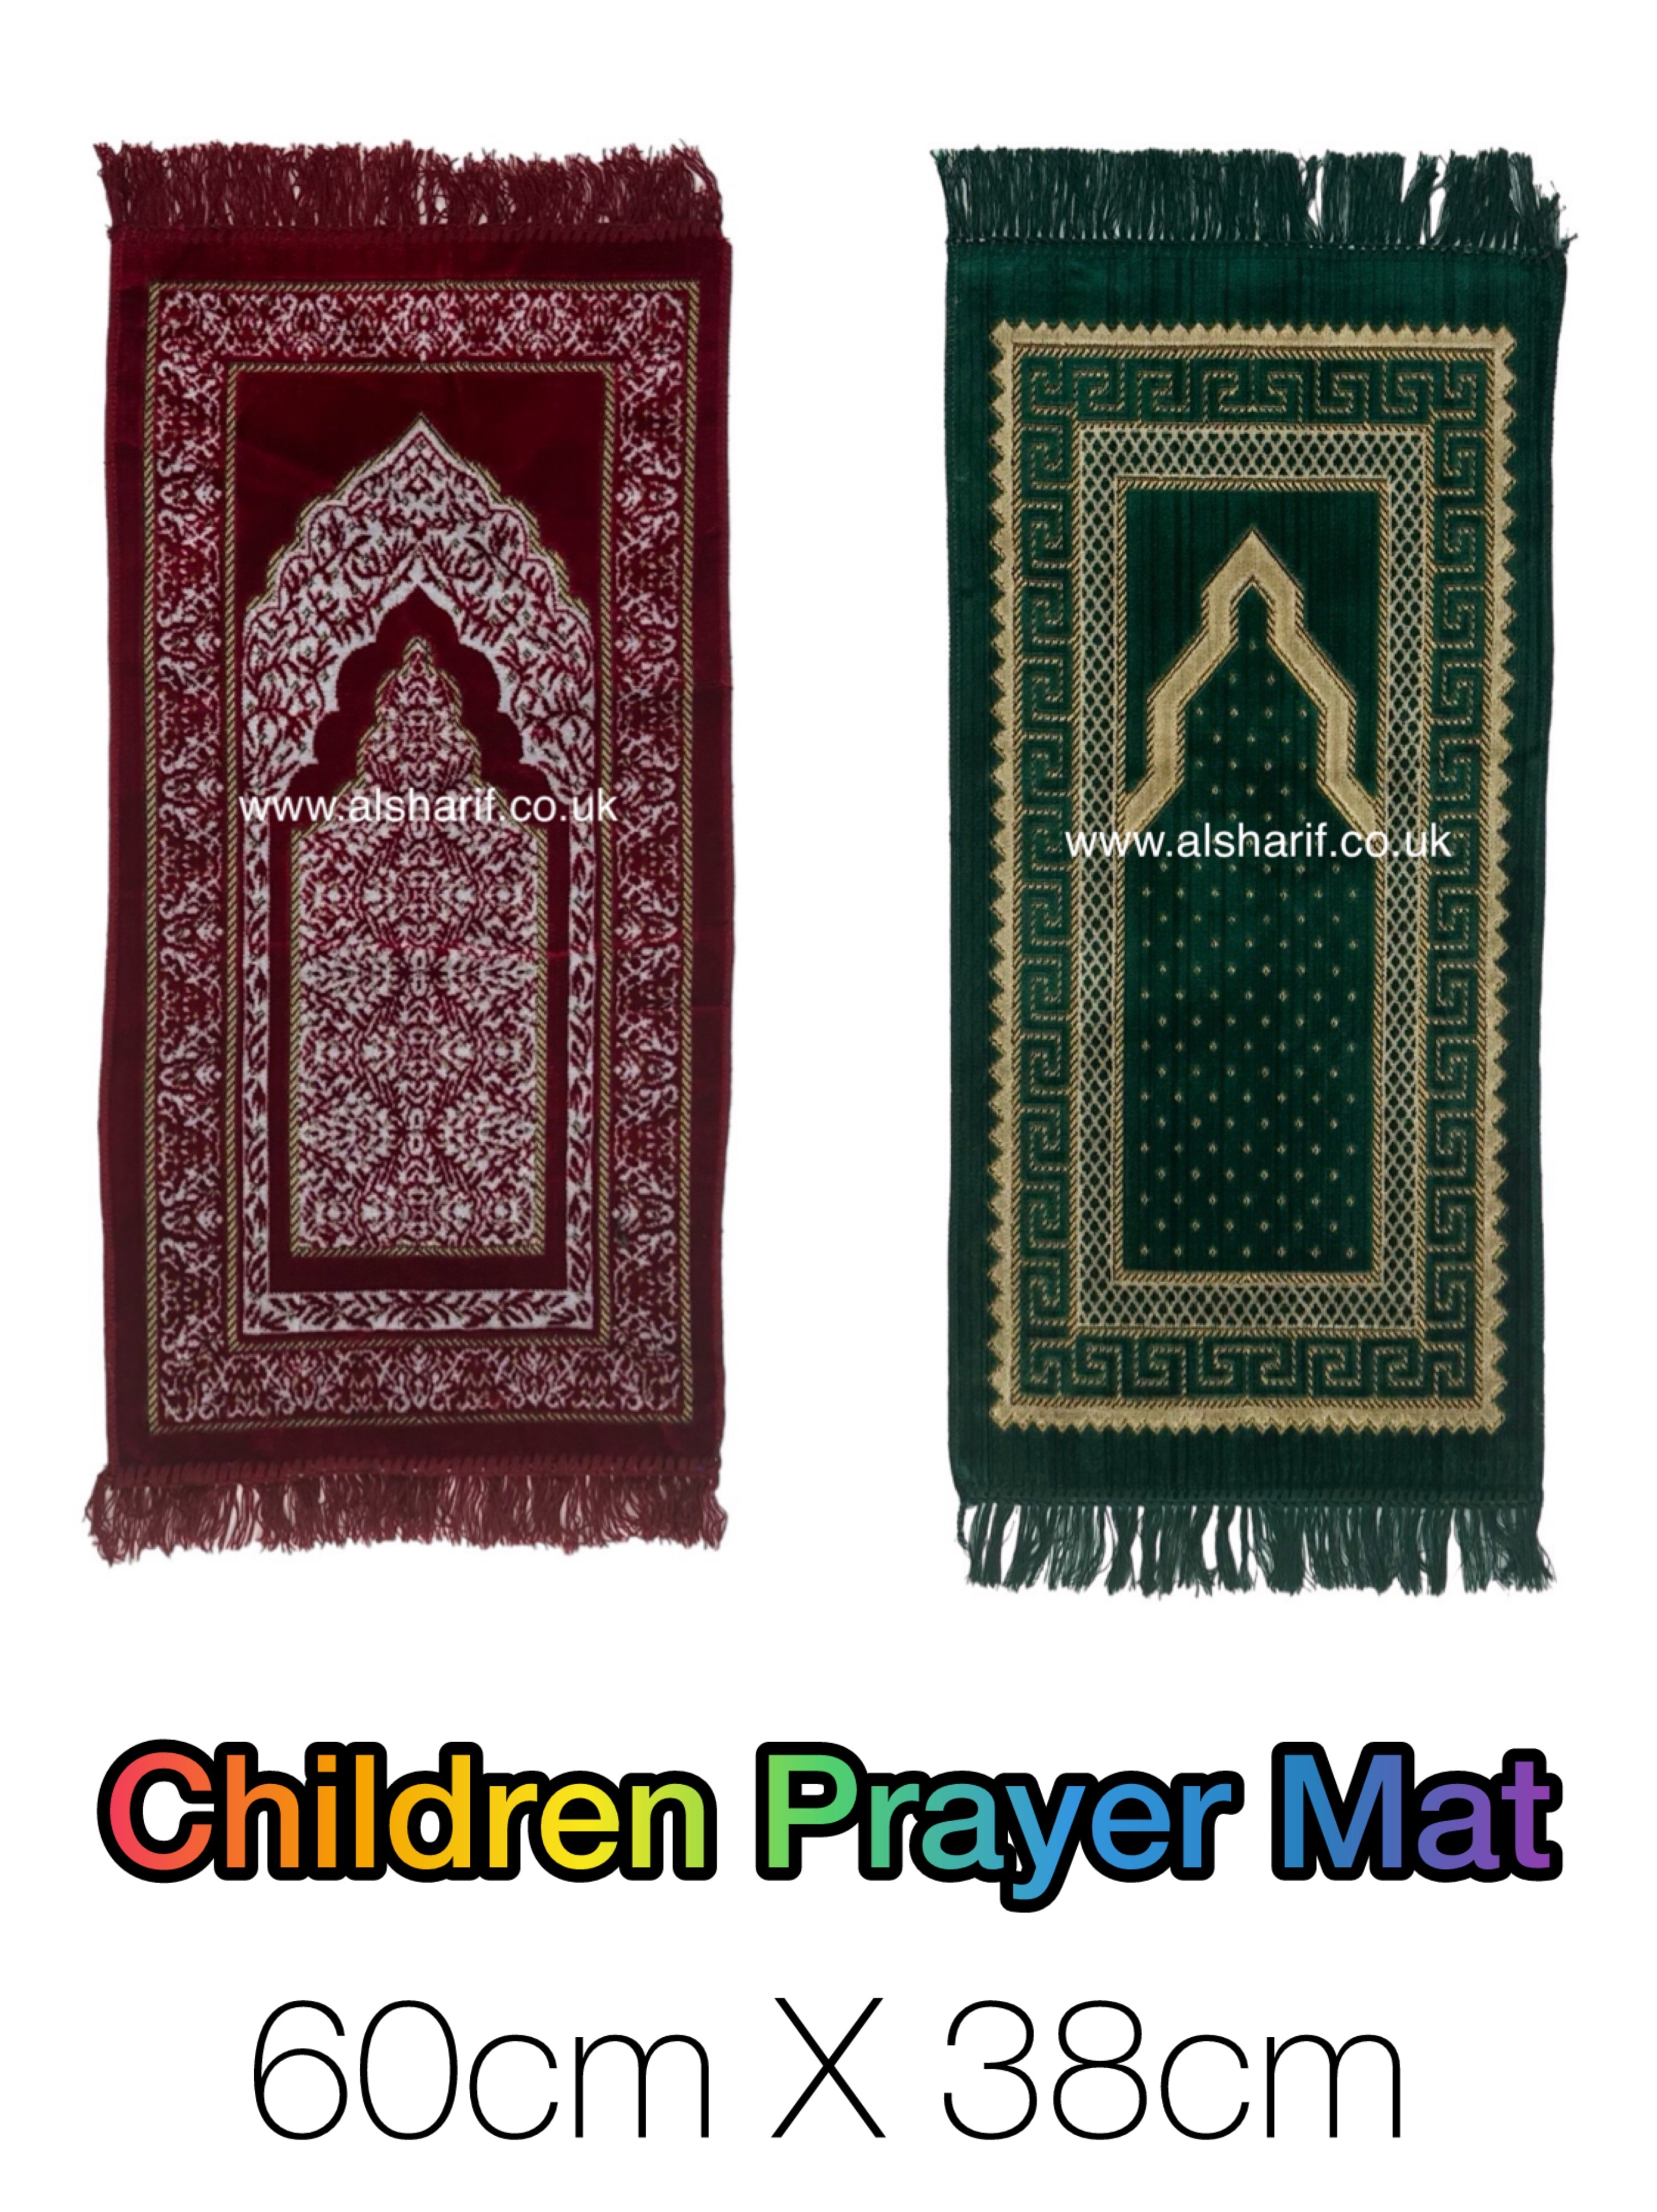 Children's Prayer Mat